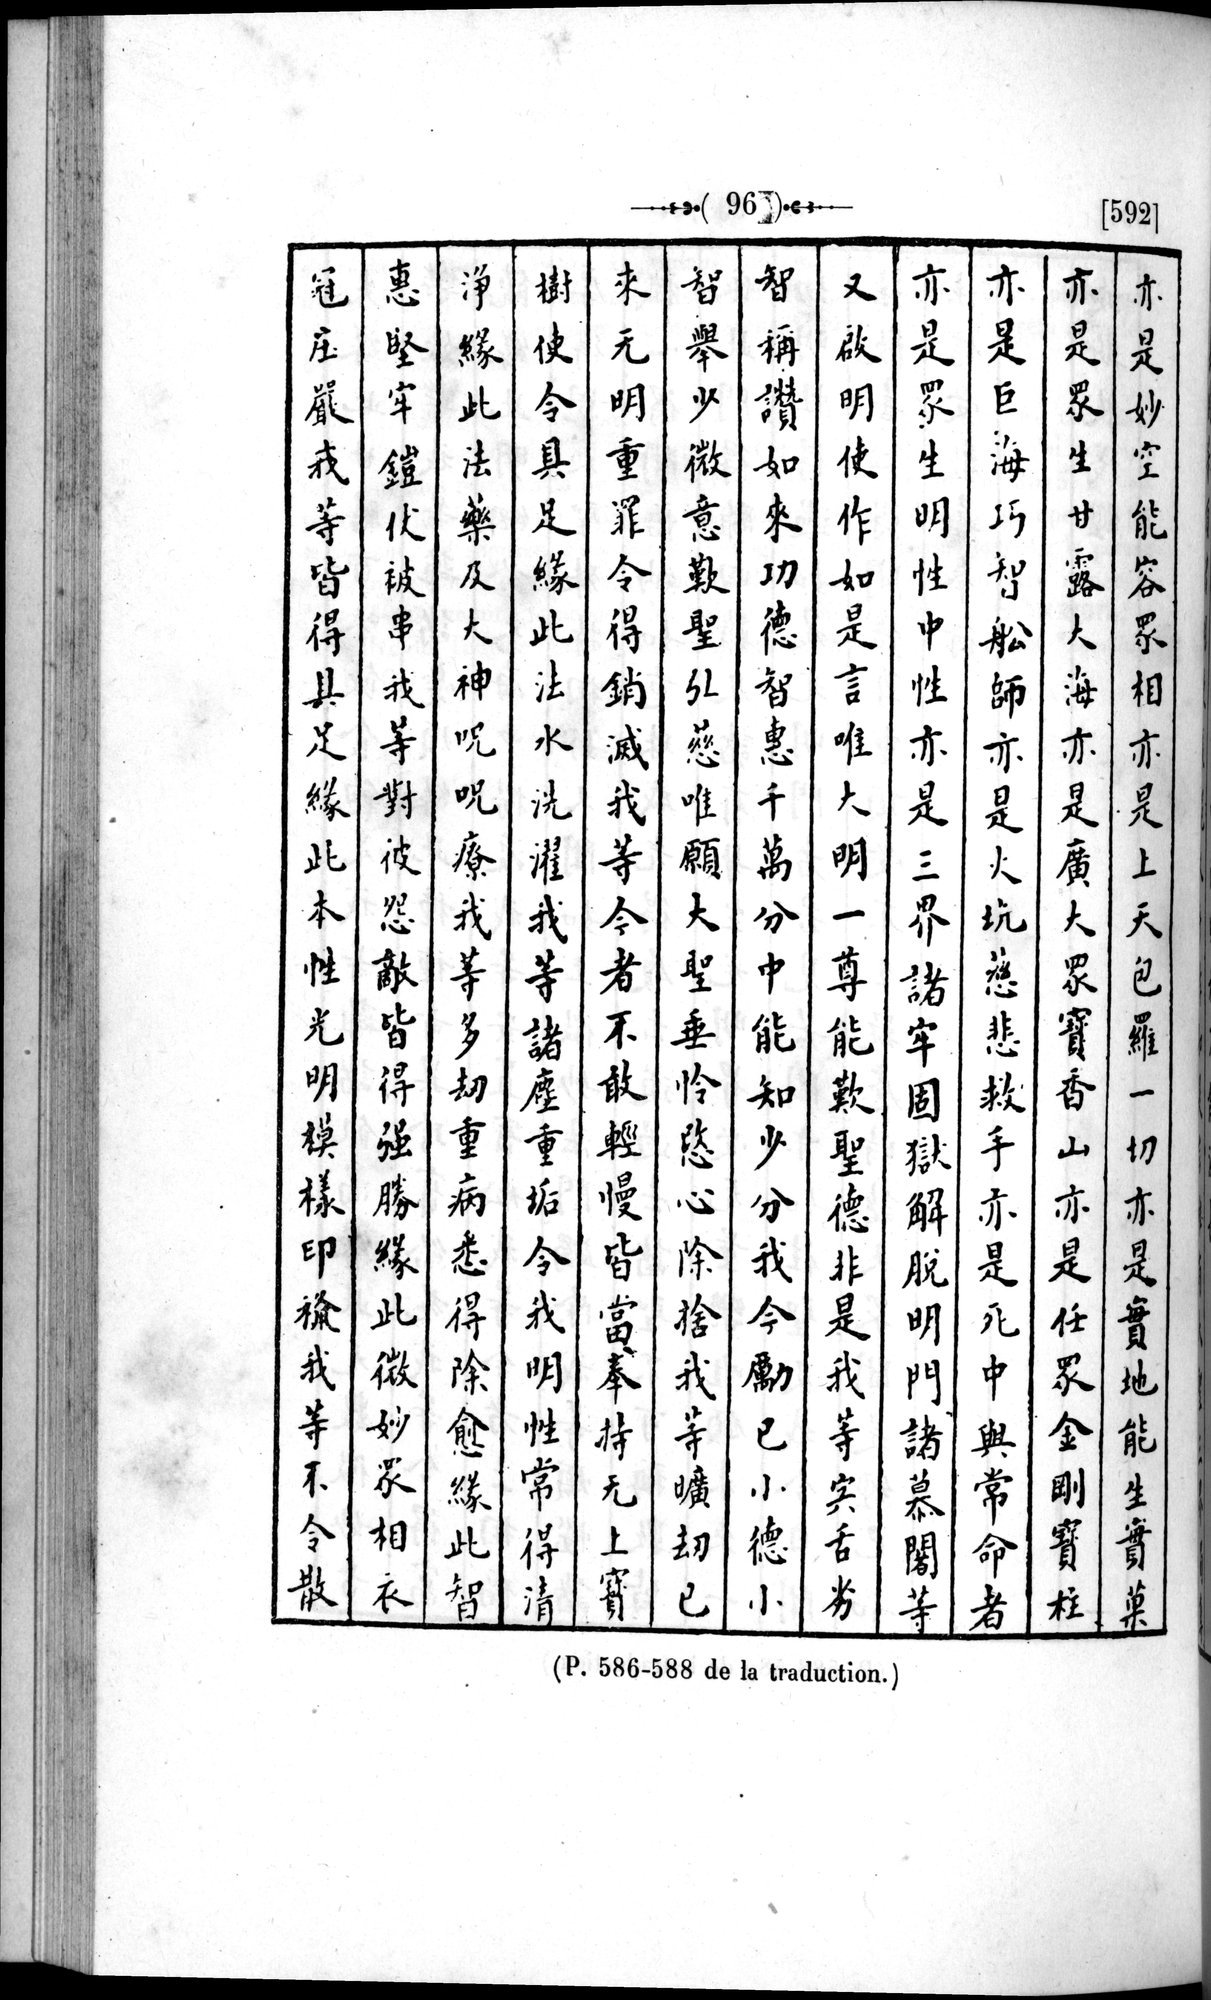 Un traité manichéen retrouvé en Chine : vol.1 / Page 106 (Grayscale High Resolution Image)